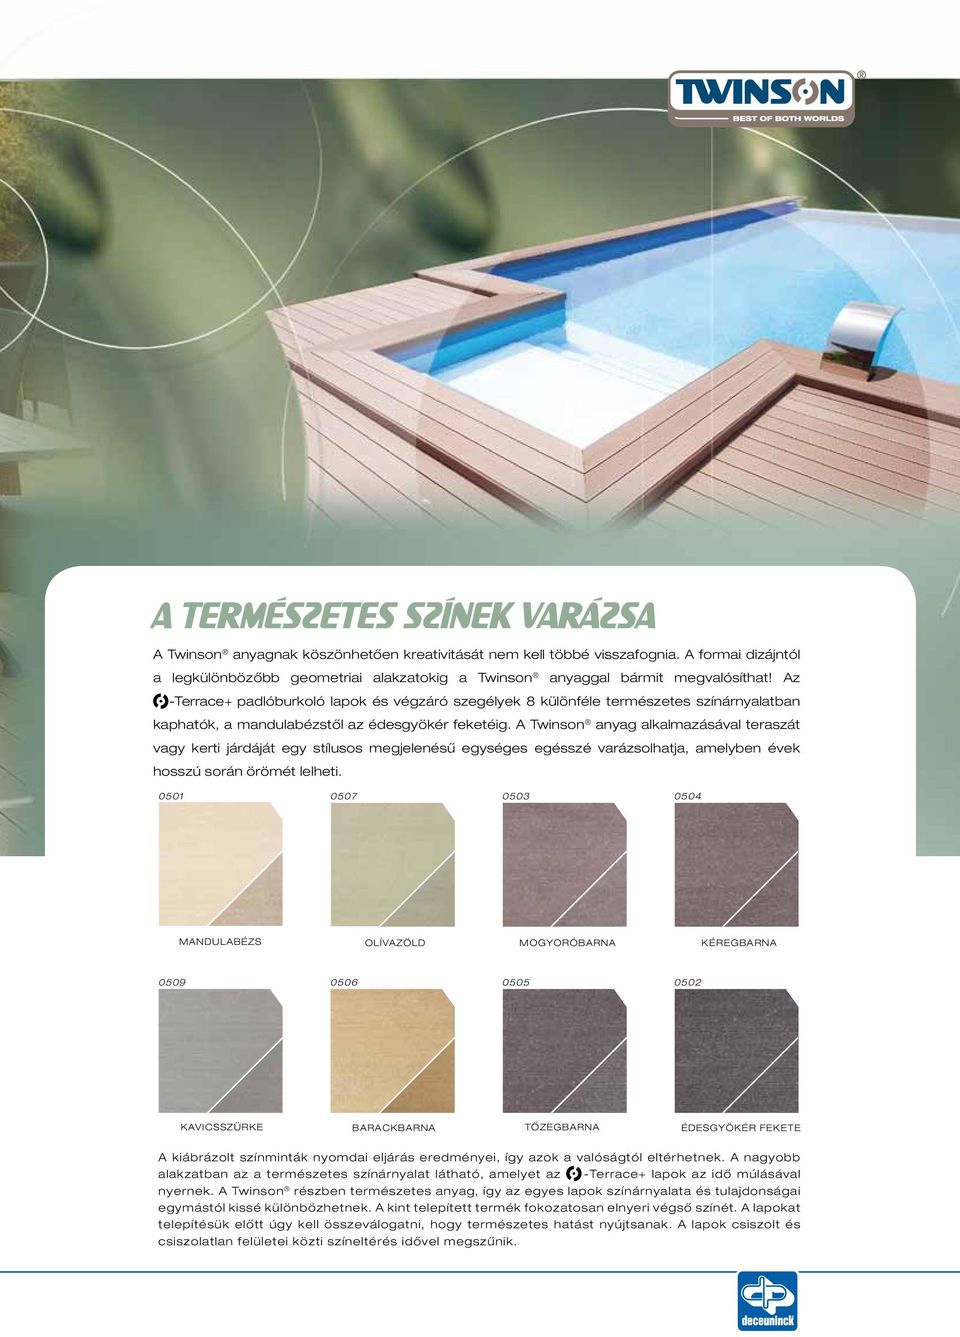 Az -Terrace + padlóburkoló lapok és végzáró szegélyek 8 különféle természetes színárnyalatban kaphatók, a mandulabézstől az édesgyökér feketéig.